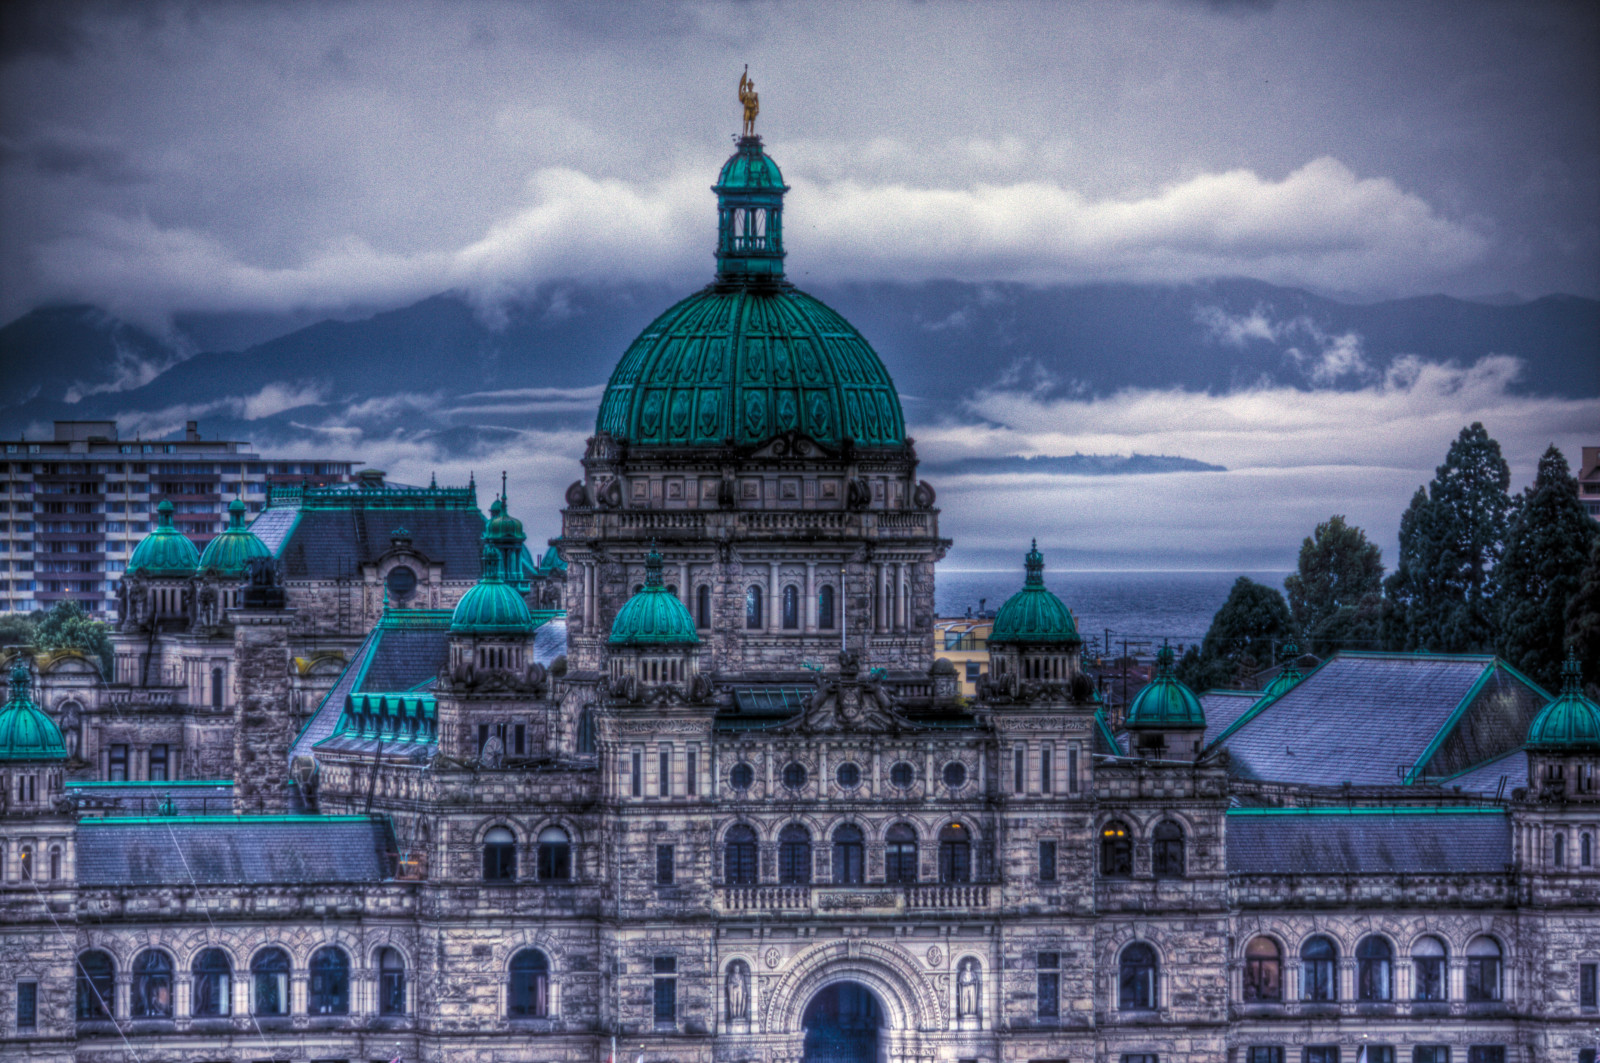 British Columbia's legislature